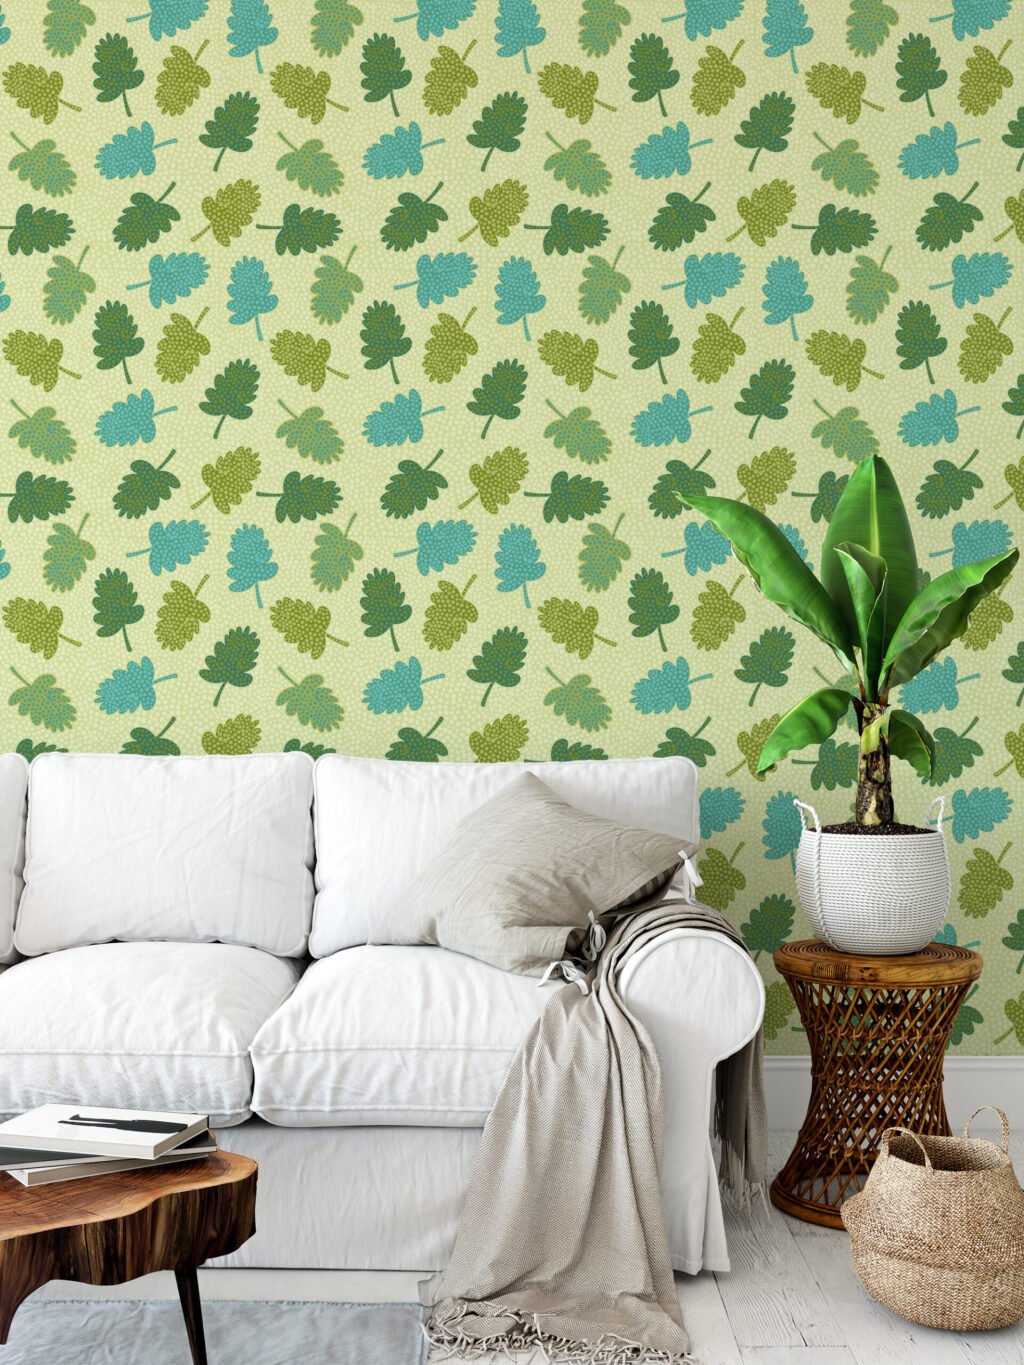 Yeşil Yapraklar Duvar Kağıdı, Yaprak Motifli 3D Duvar Posteri Yaprak Desenli Duvar Kağıtları 5